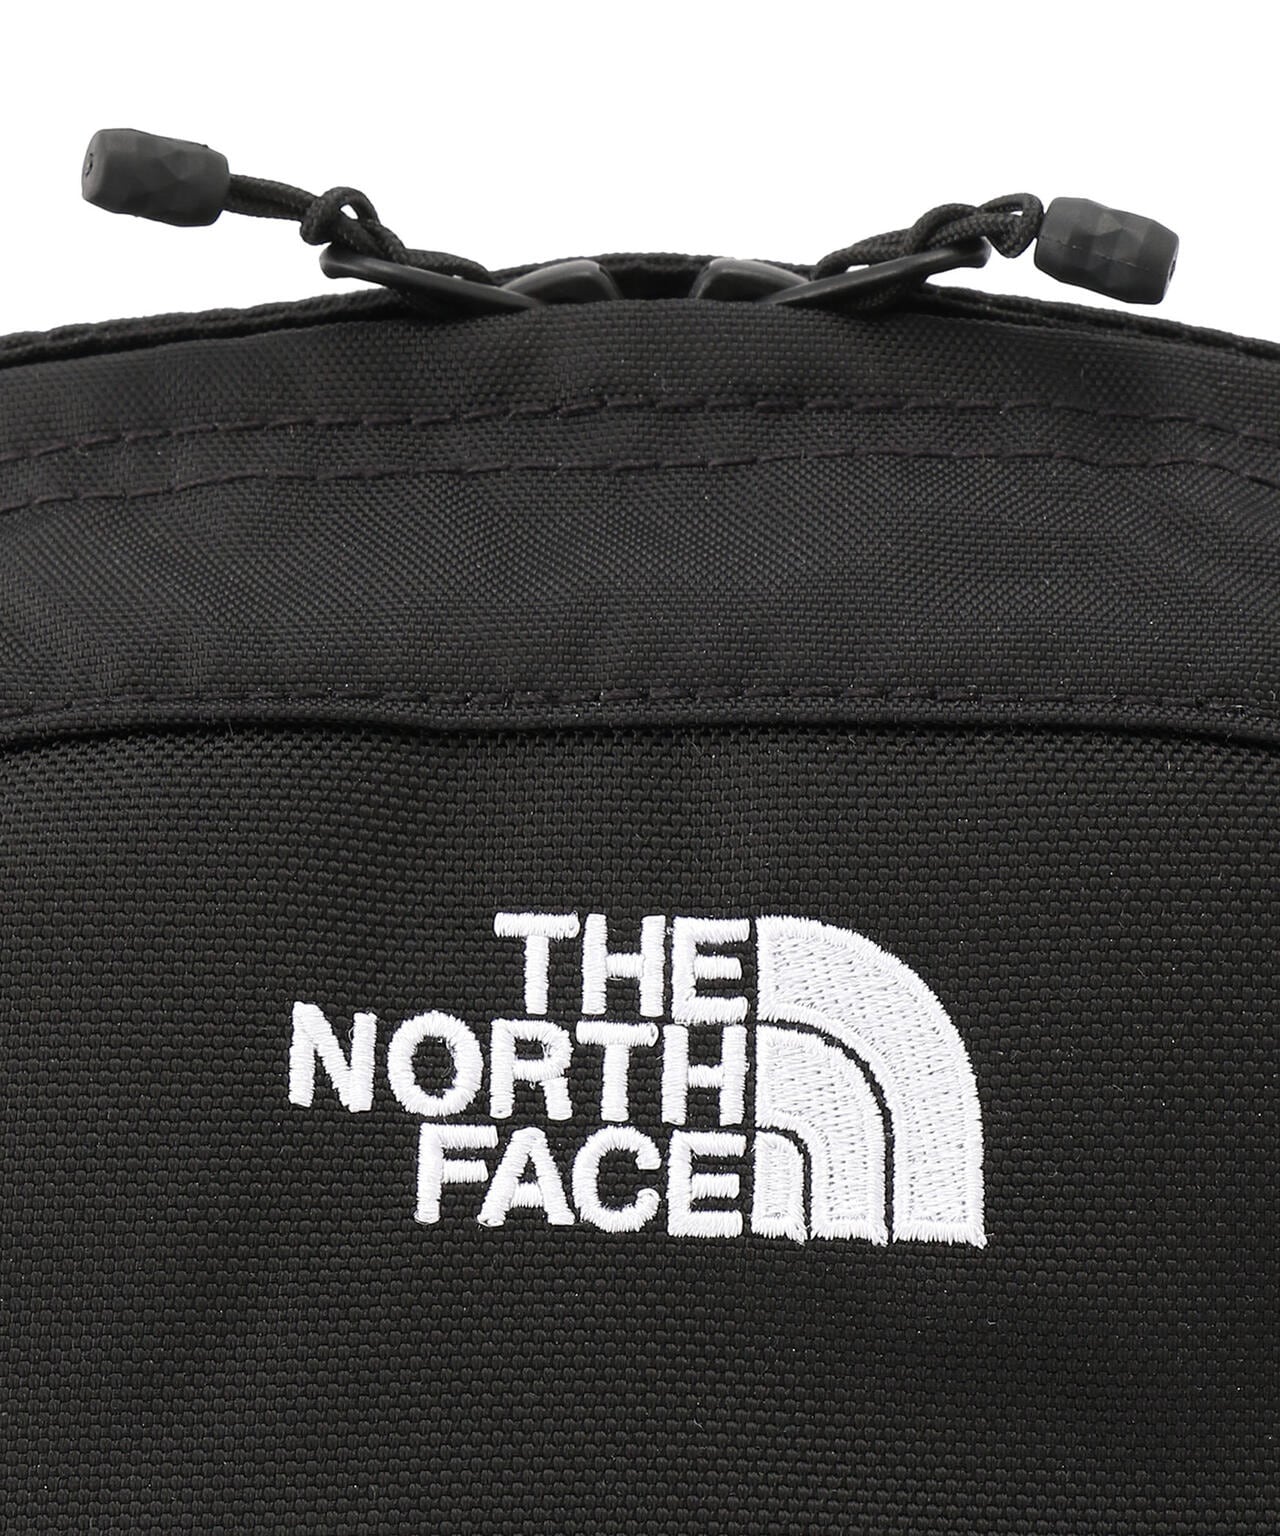 THE NORTH FACE/ザ・ノースフェイス/Granule/グラニュール ウエスト 